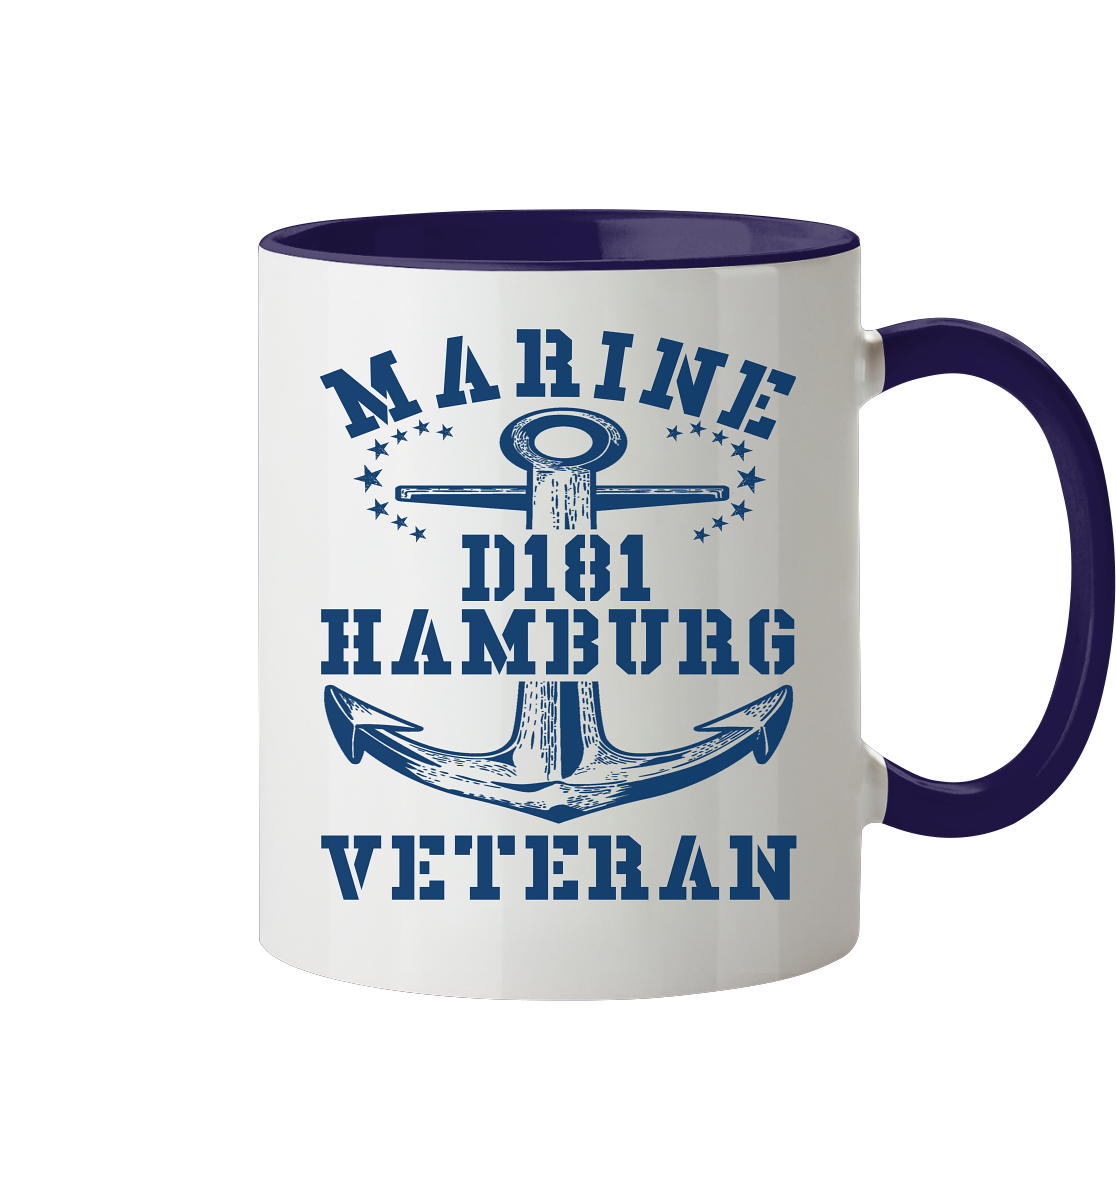 Zerstörer D181 HAMBURG Marine Veteran - Tasse zweifarbig